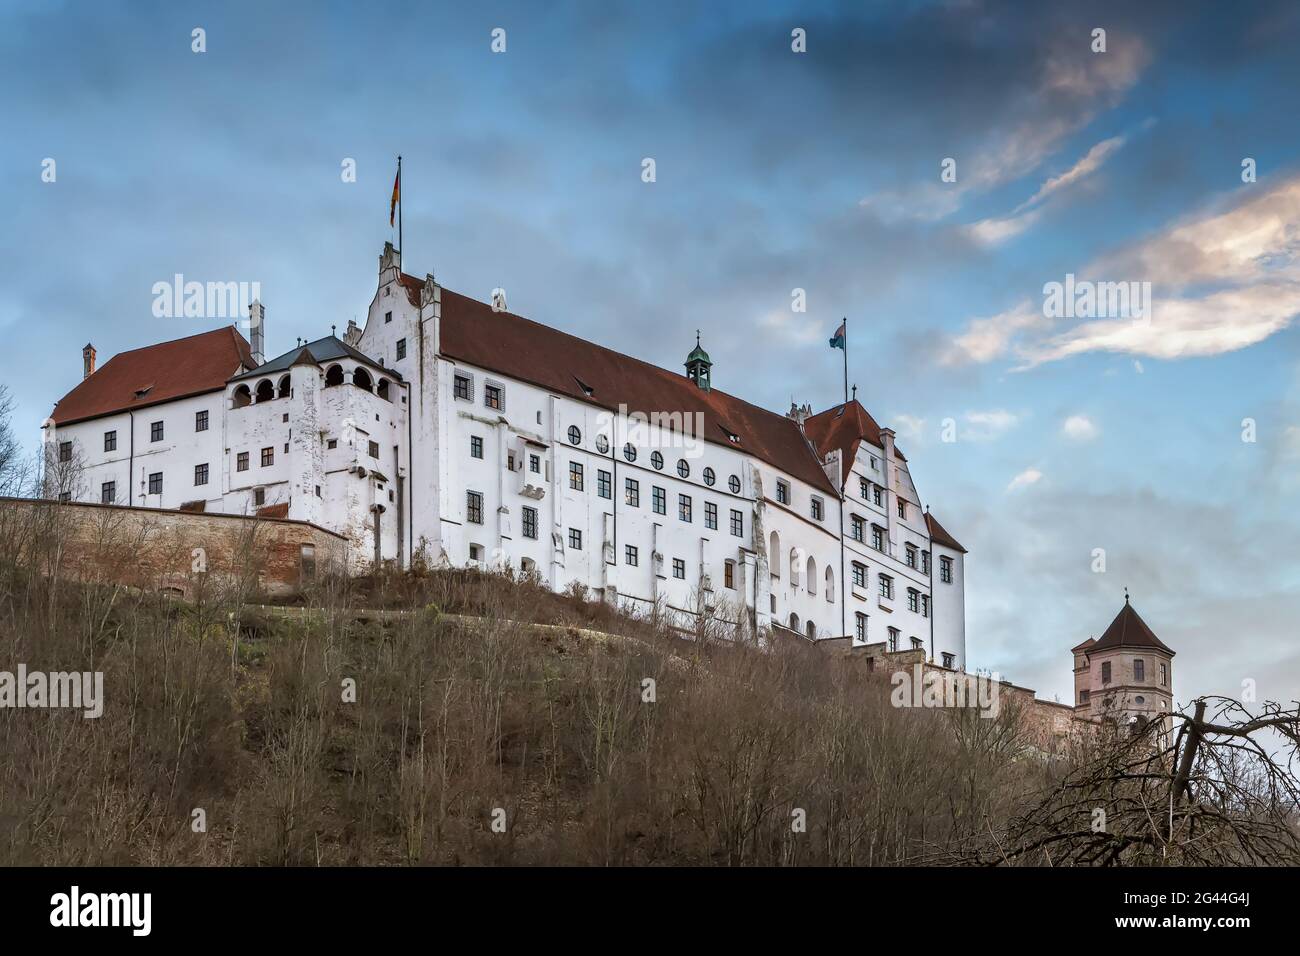 Trausnitz Castle, Landshut, Germany Stock Photo